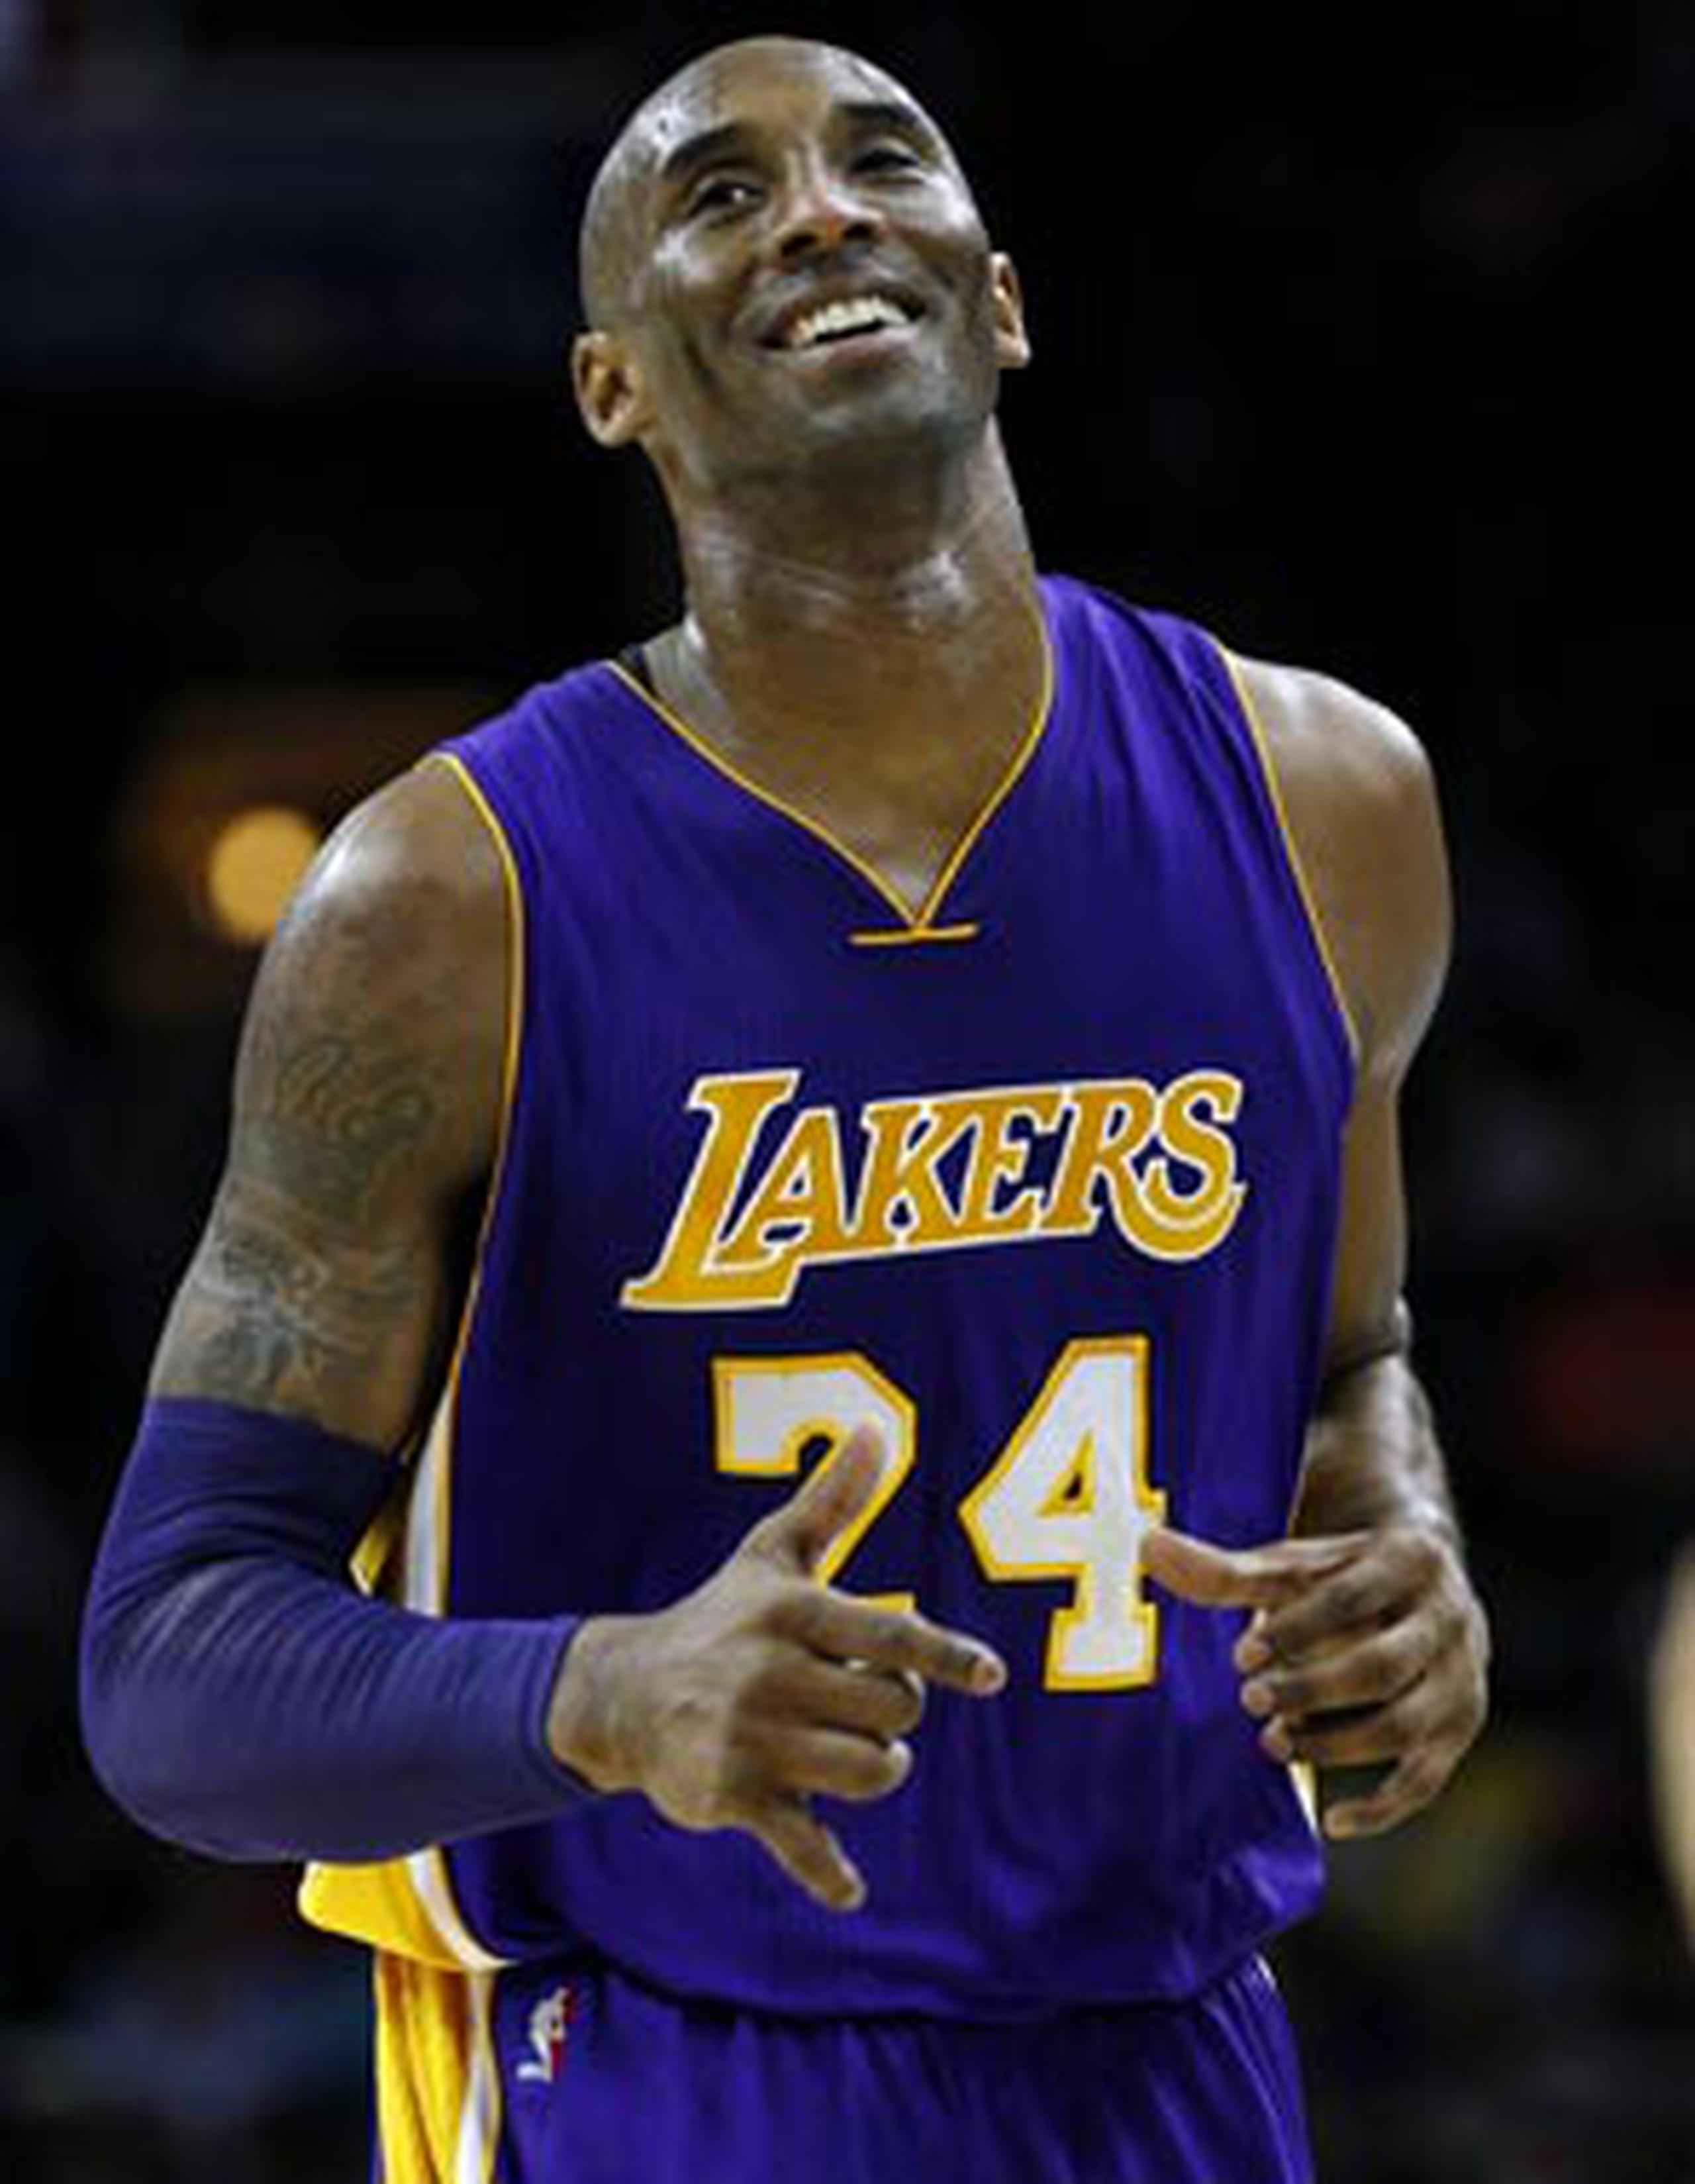 Luego de 20 temporadas de amor y odio, Kobe Bryant le dirá adiós a su carrera activa al finaliza la campaña. (AP / Matt Slocum)